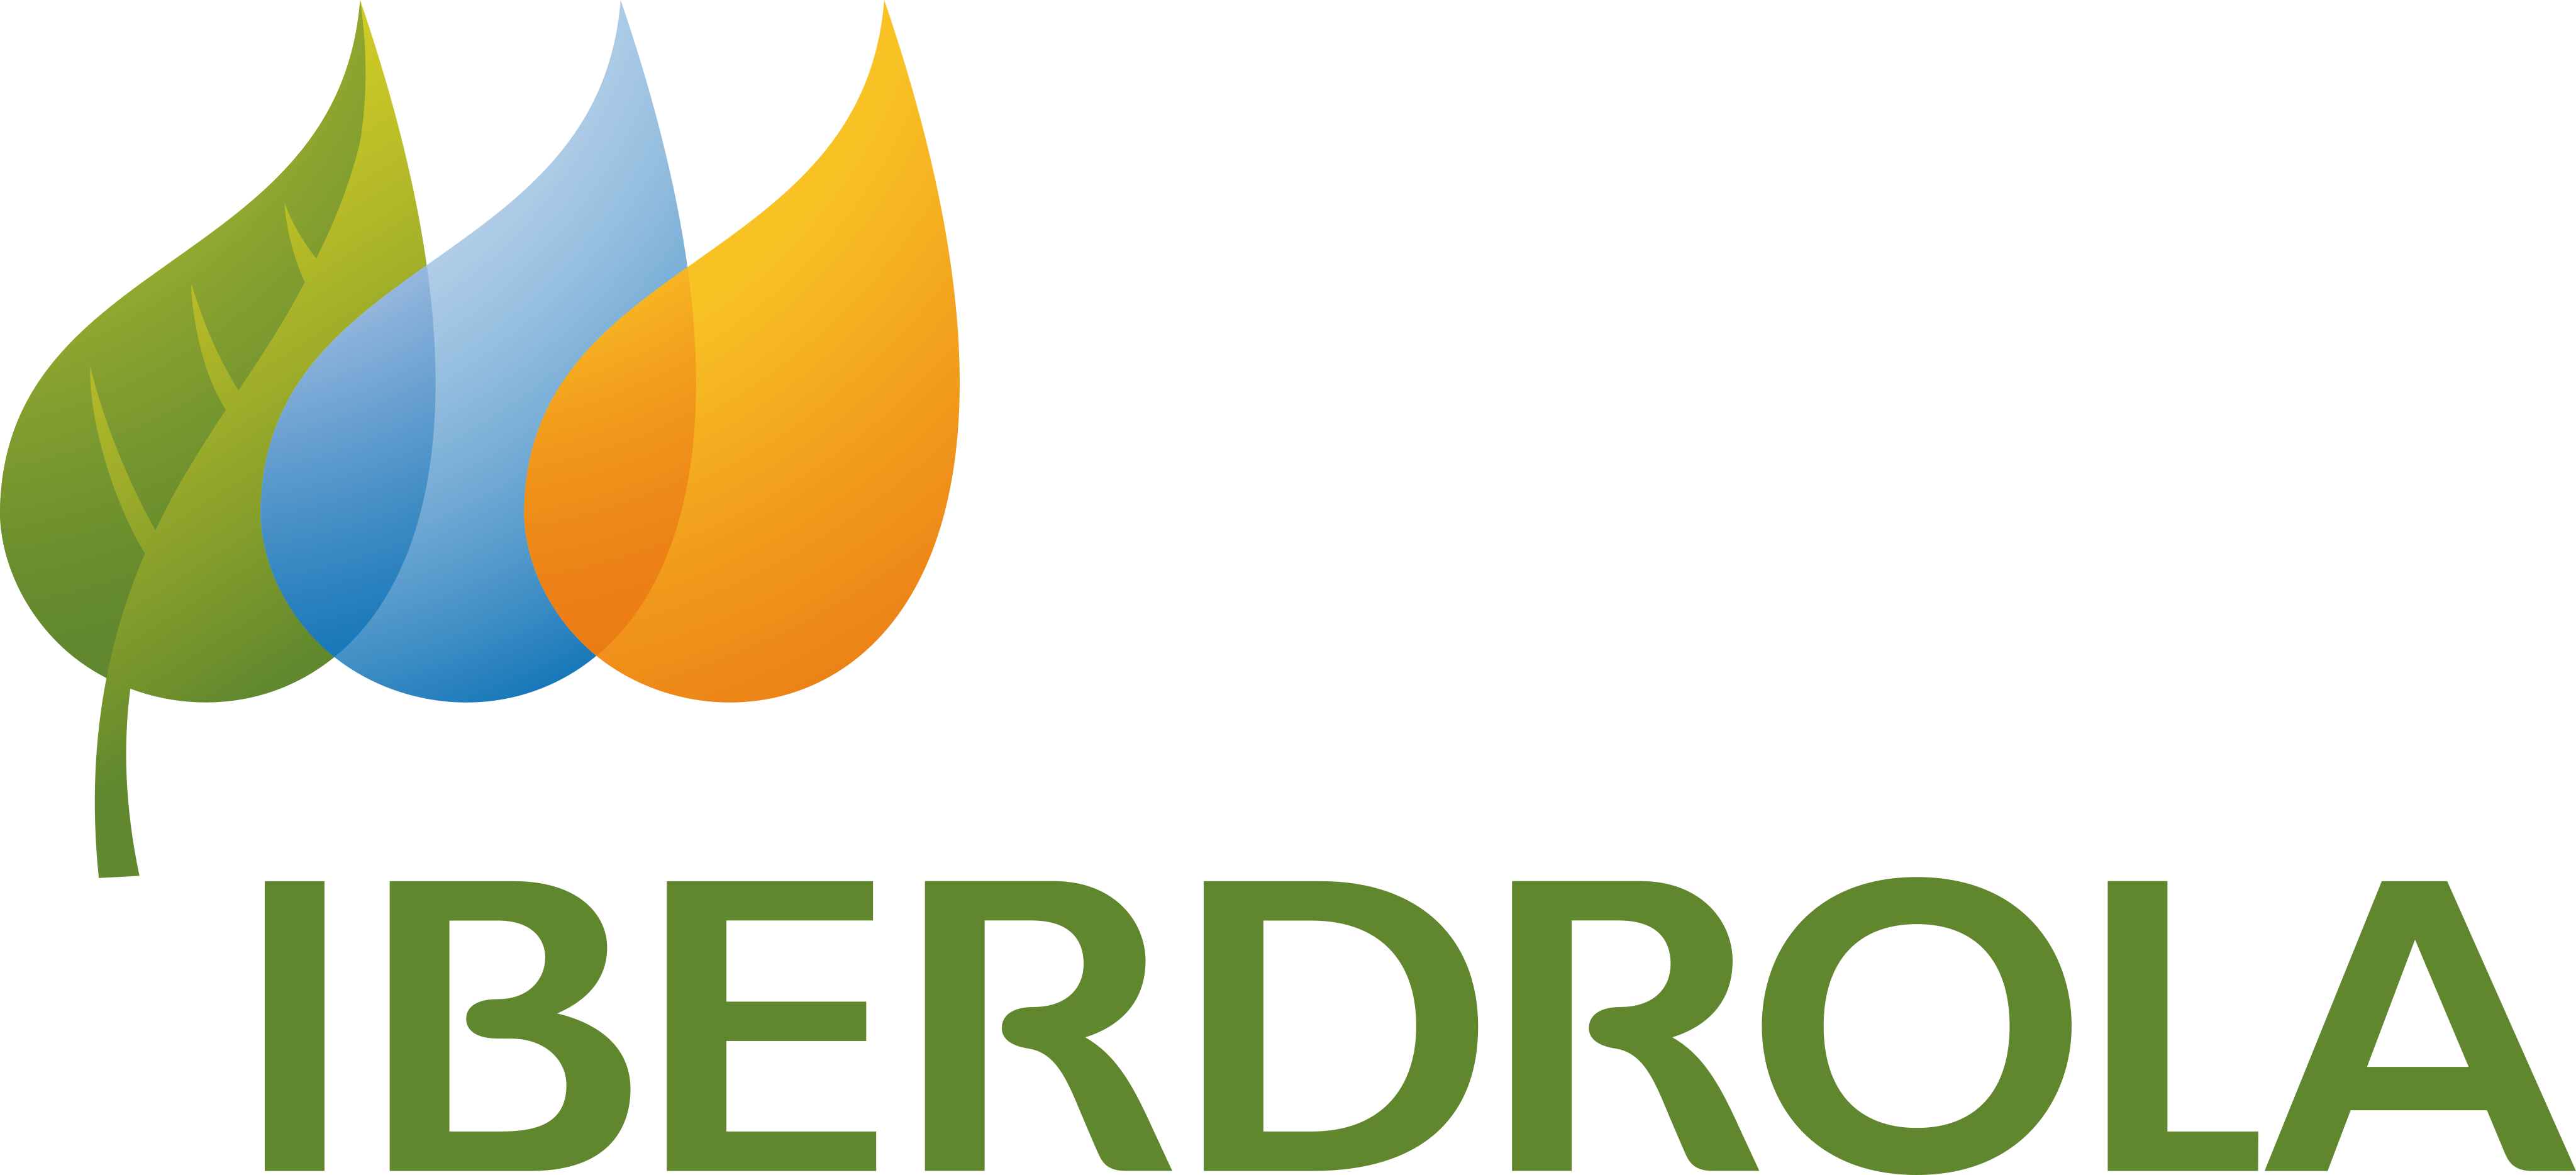 Iberdrola logo 11